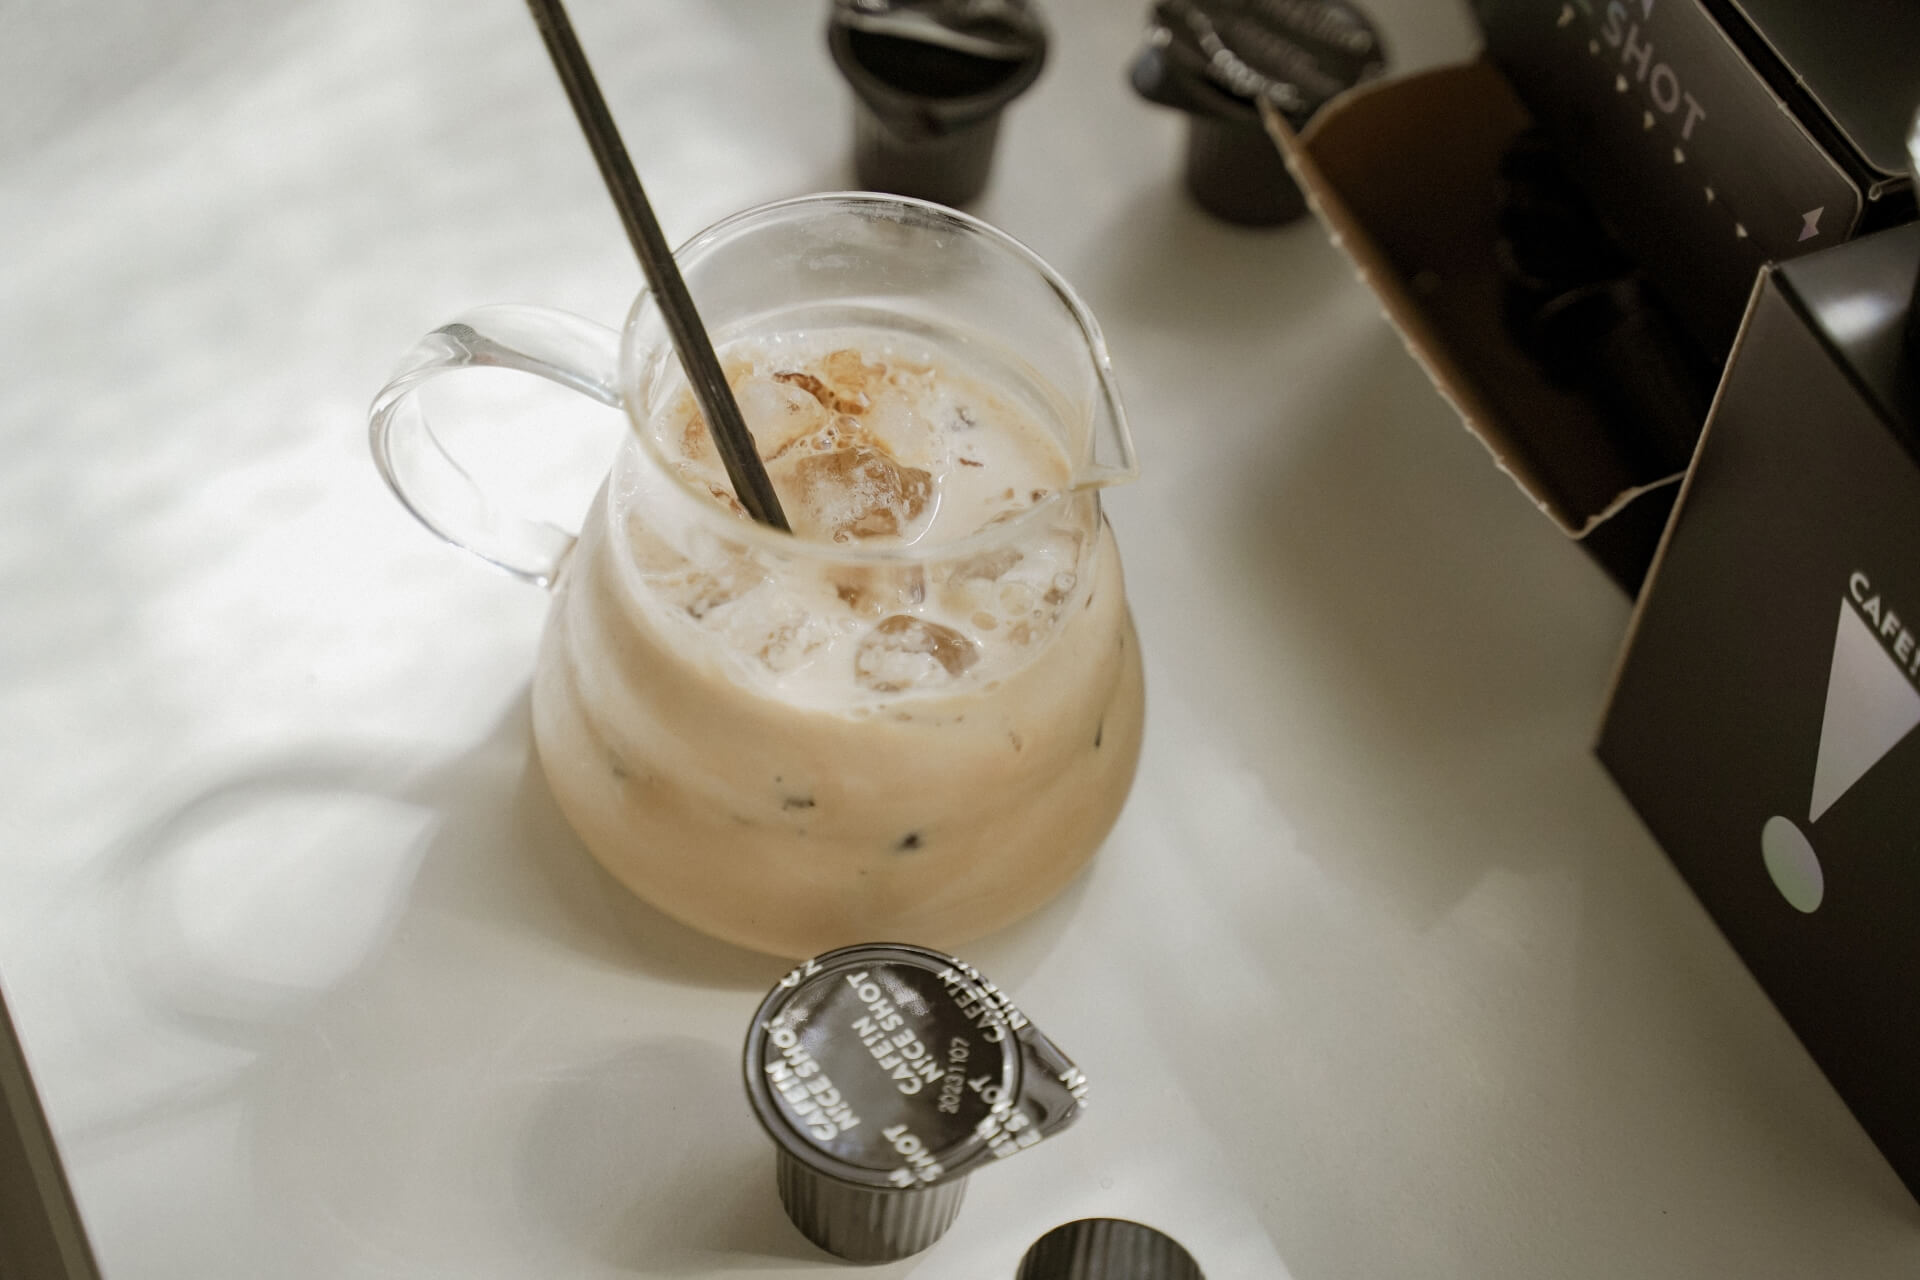 N!CE SHOT 極萃咖啡球以專利技術之高倍取工藝製作而成，非濃縮還原，無添加即溶咖啡粉，保留完整咖啡香氣，輕巧便於攜帶，重點是沖泡方法簡單又快速